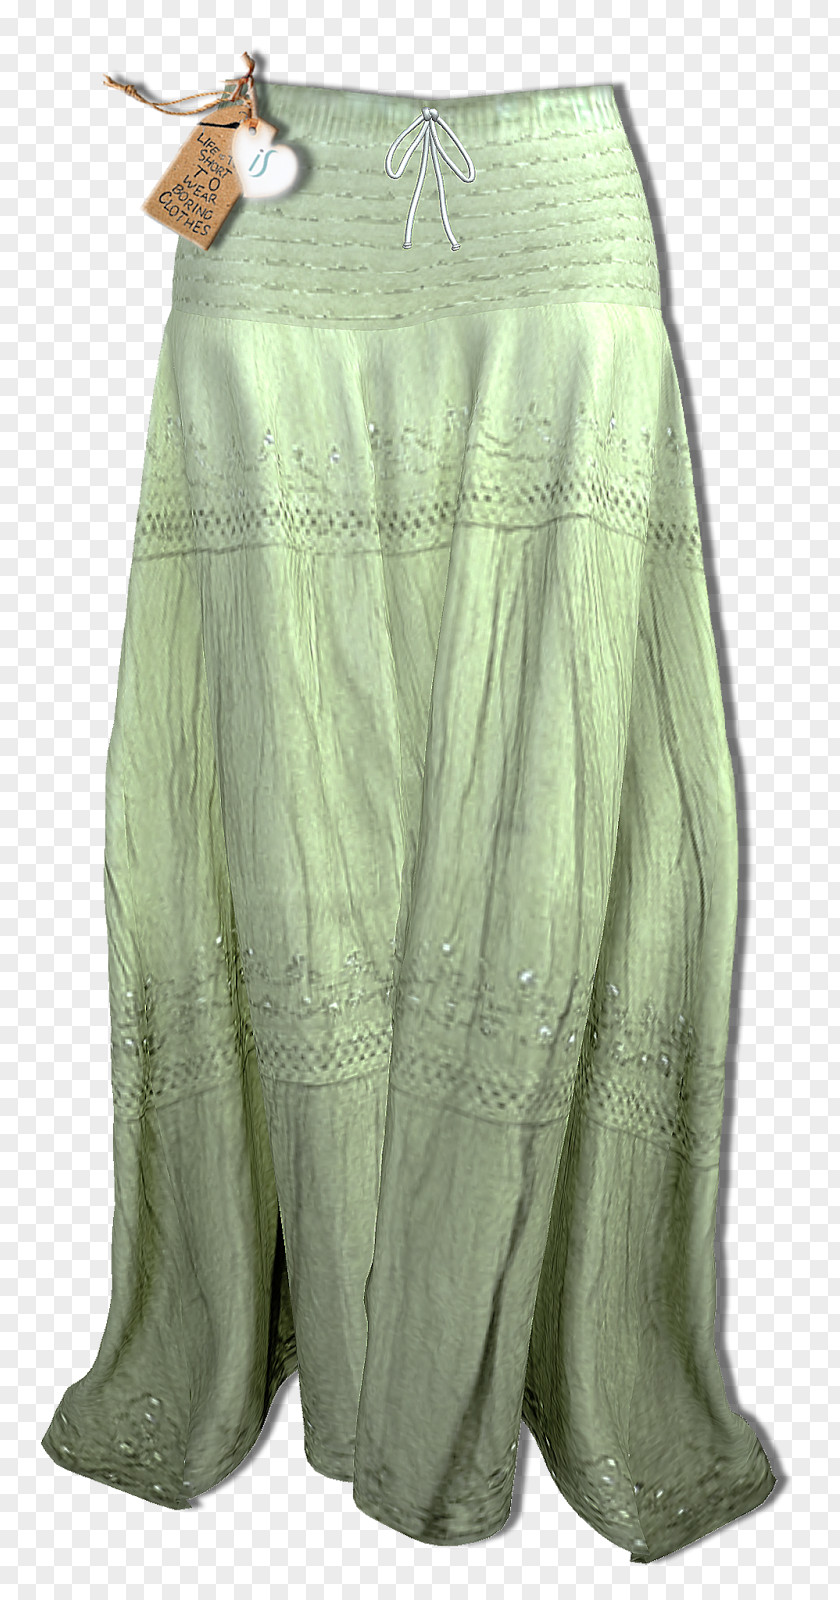 Boho Style Skirt Clothing Boho-chic Fashion Second Life PNG